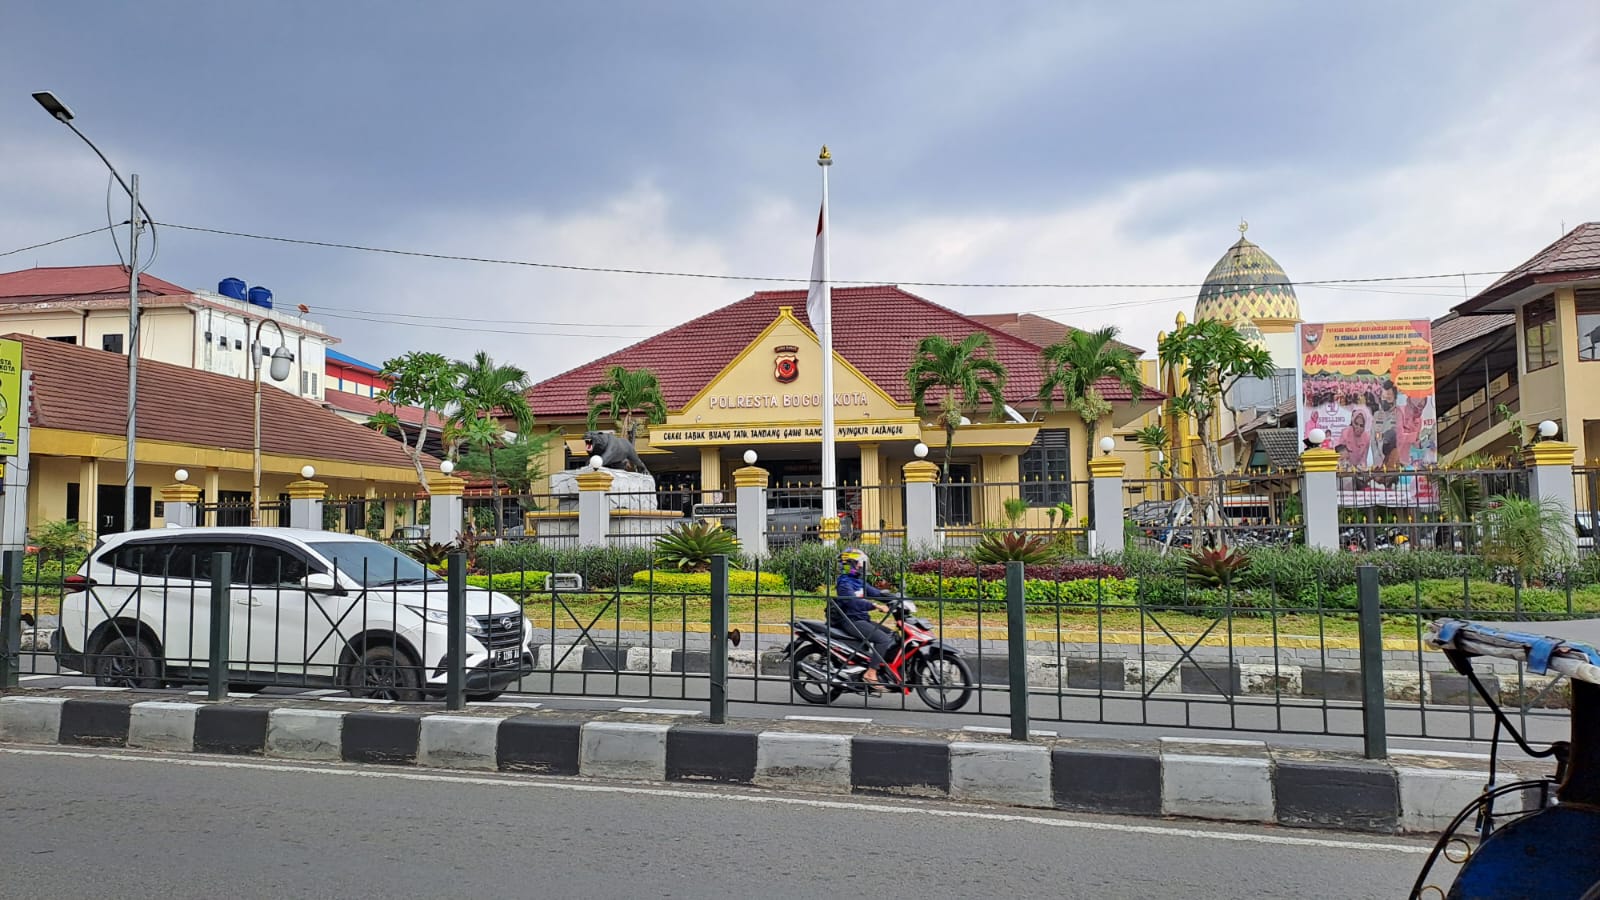 Polresta Bogor Kota Photo